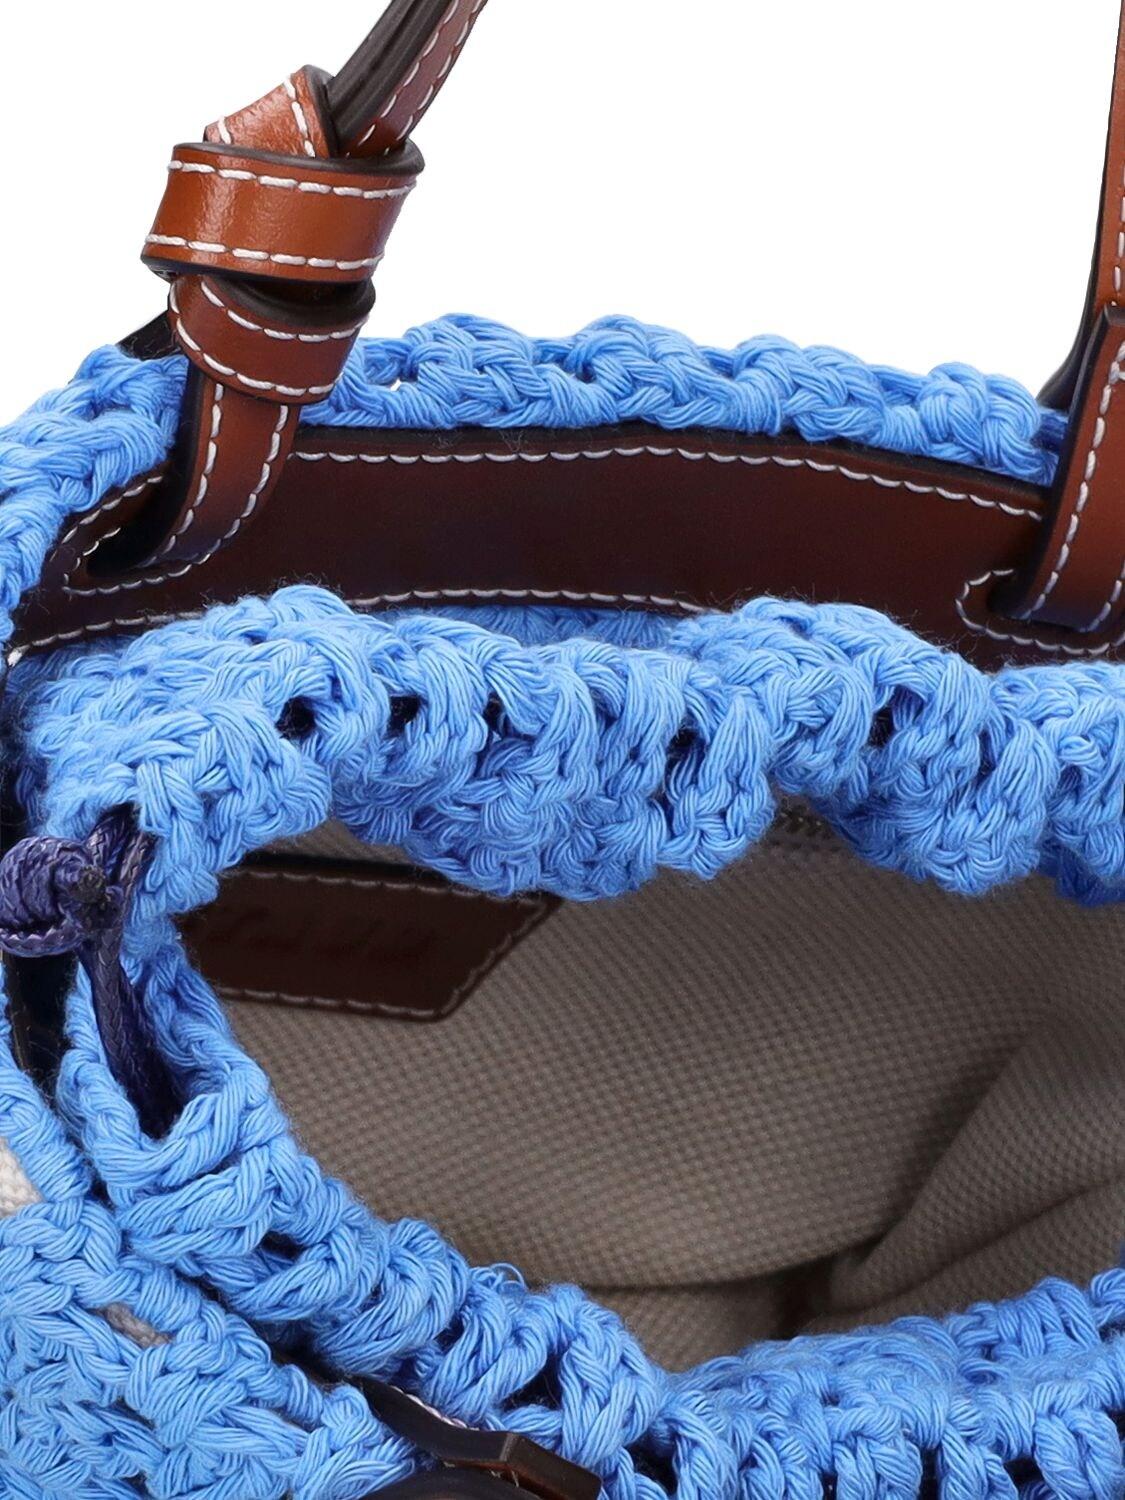 Staud Ria Logo Crochet Top-Handle Bag